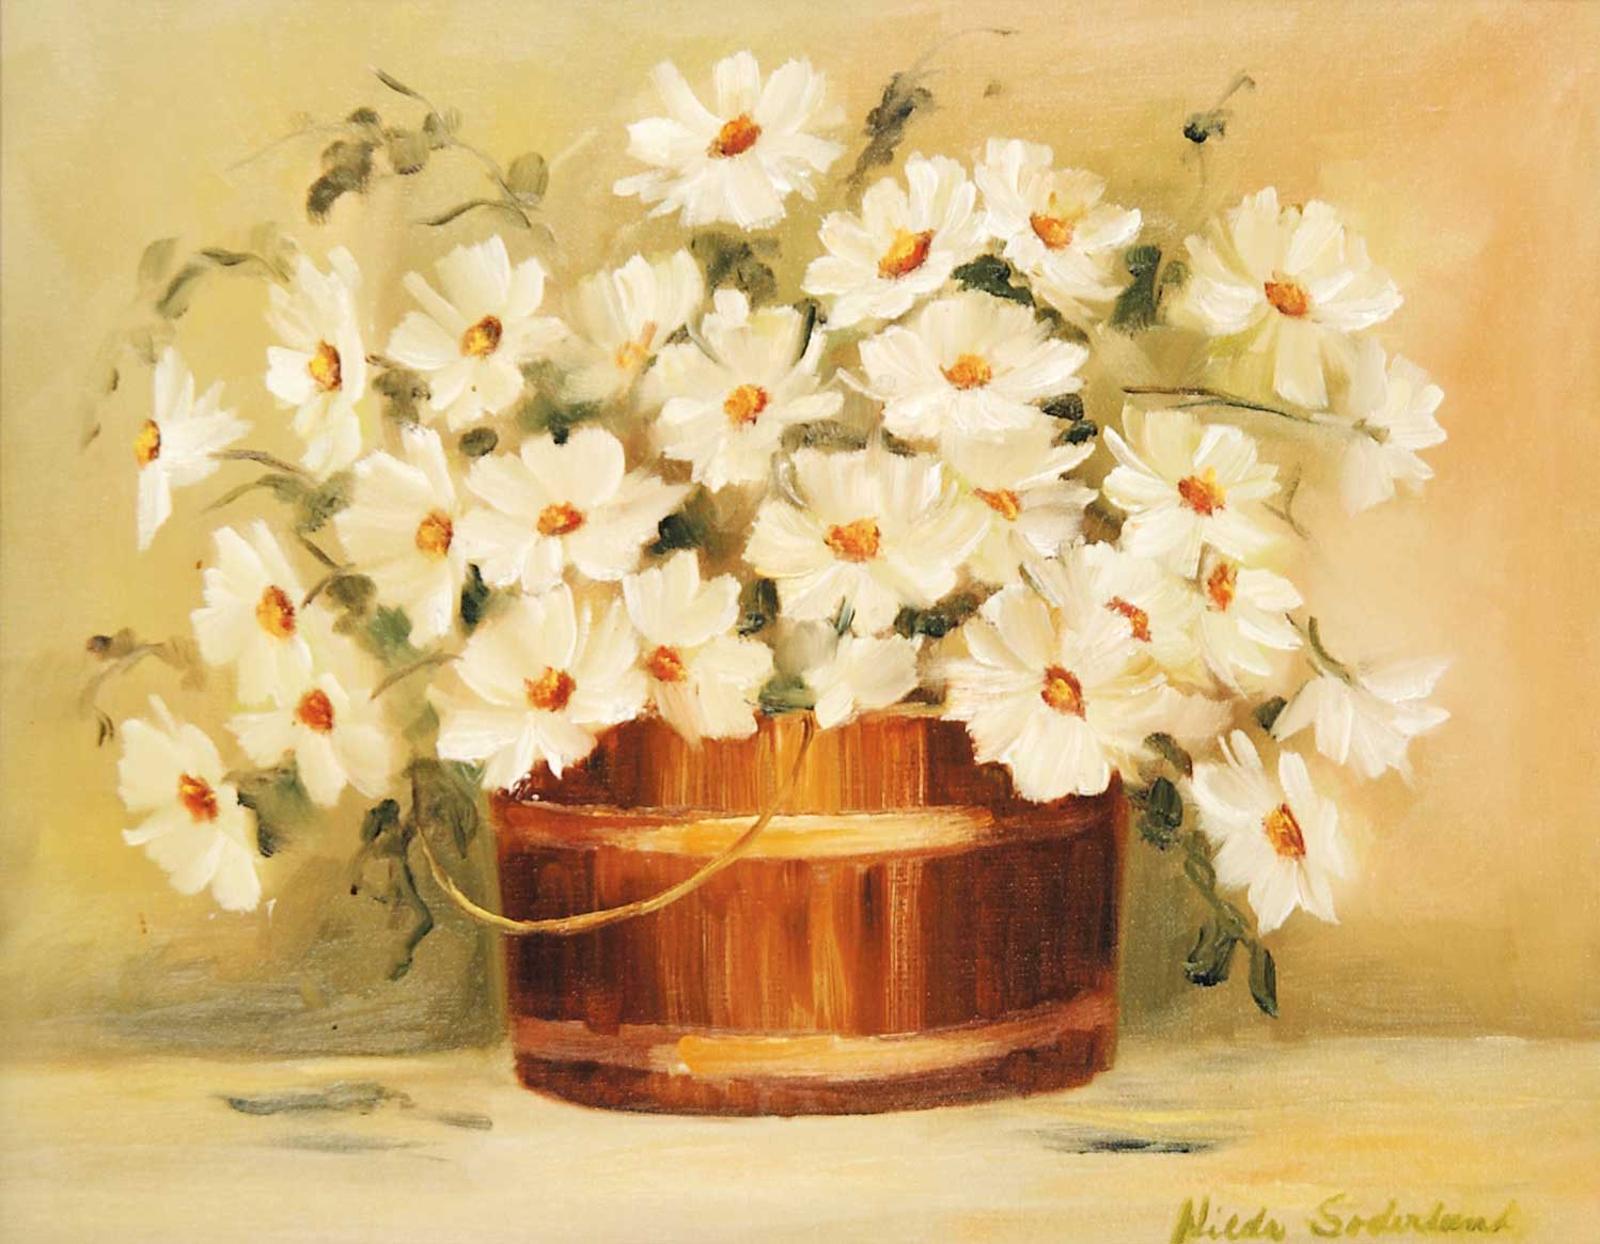 Hilda Soderlund - Untitled - Planter of White Flower